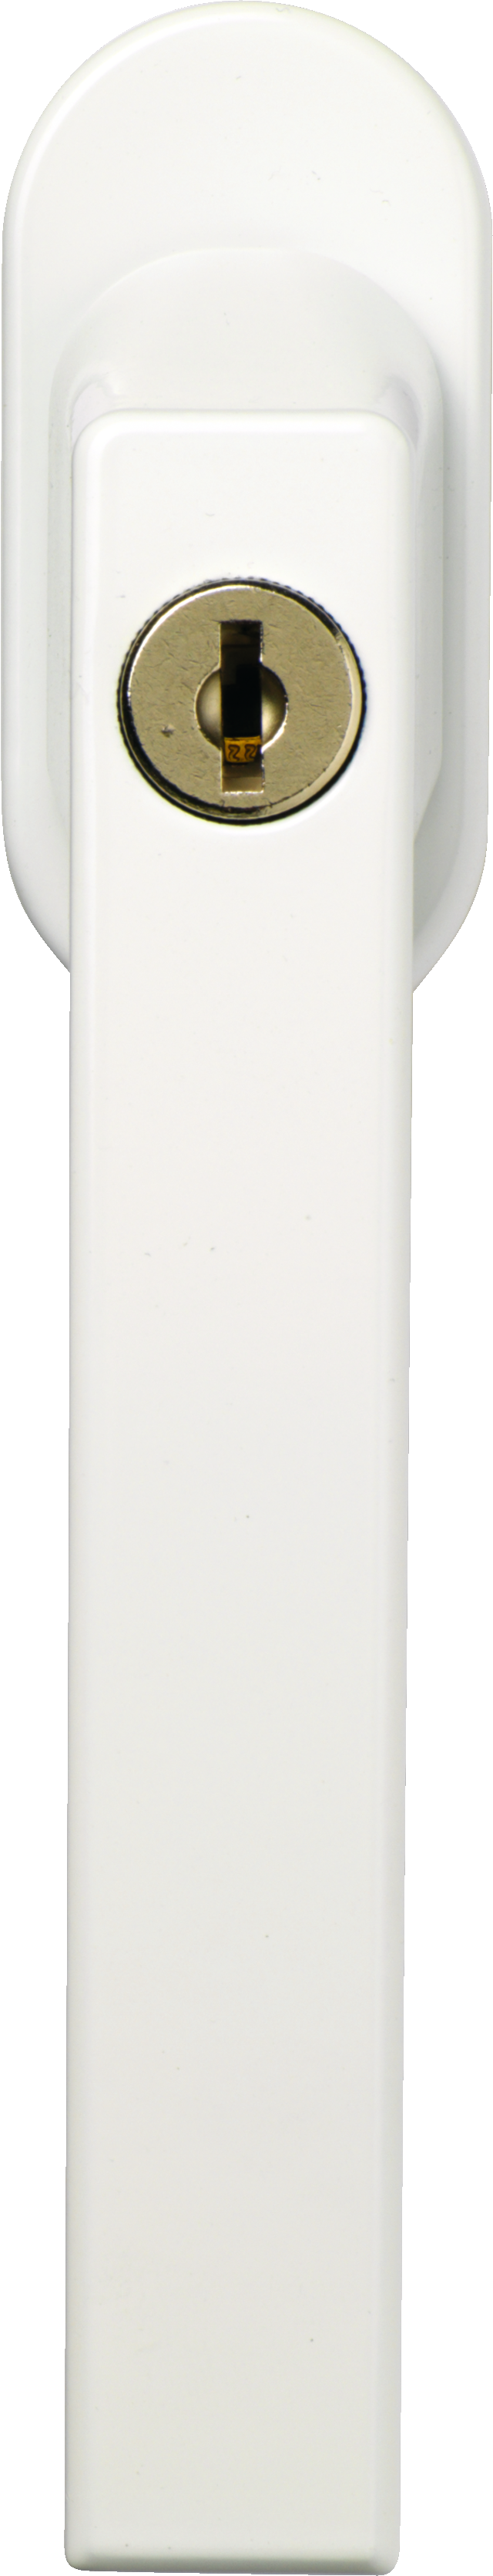 Poignée de fenêtre verrouillable FG210 blanc vue de face inclinée